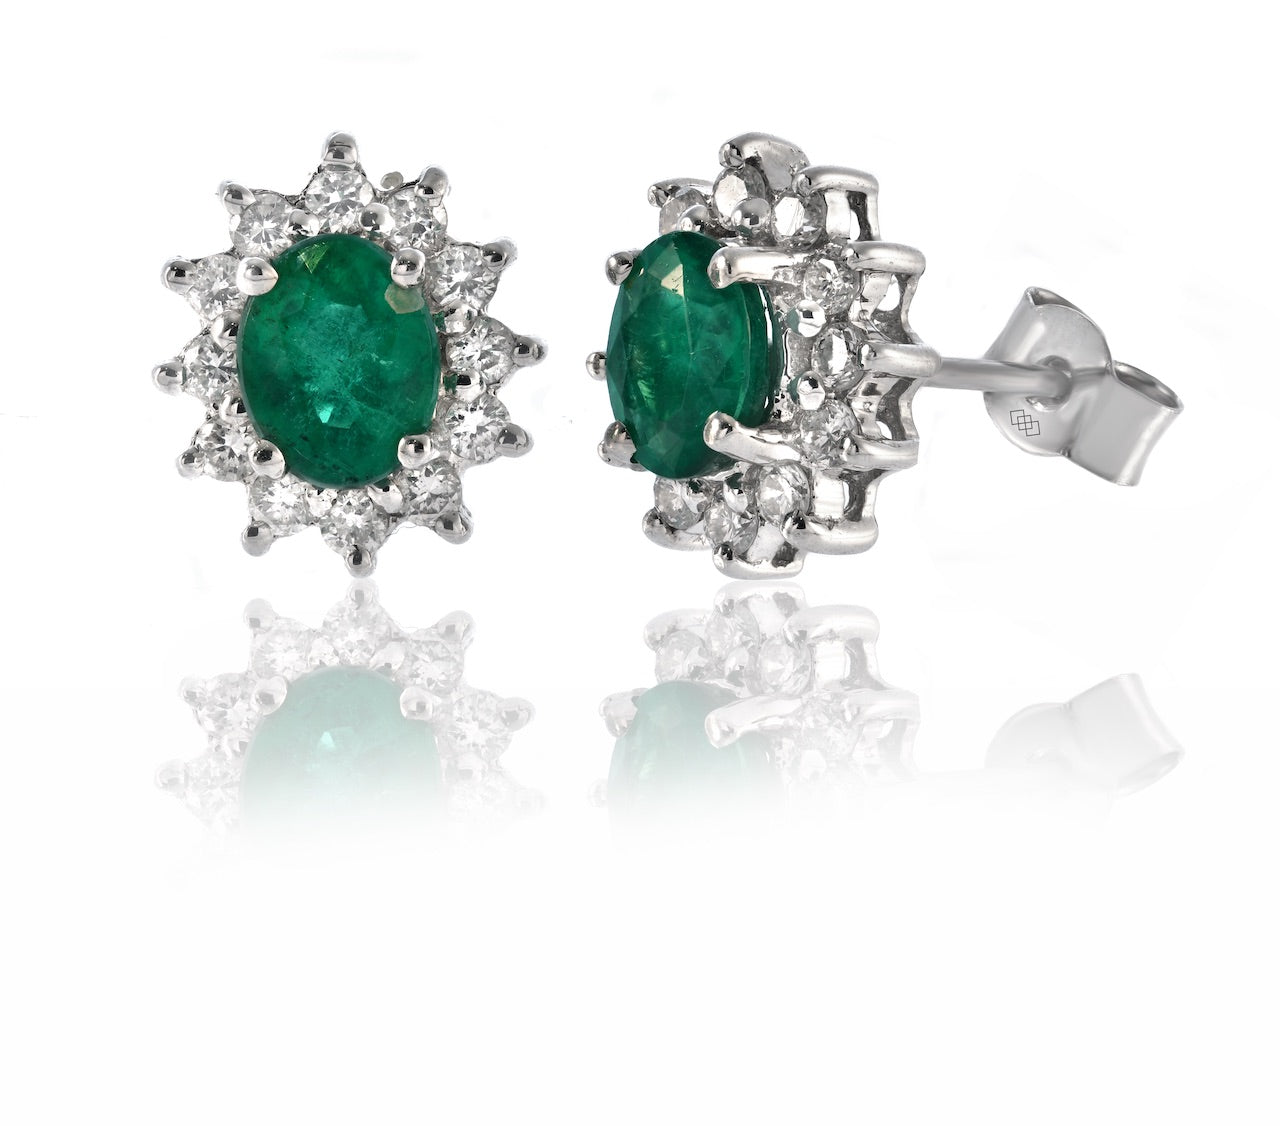 Earrings - Oval Cut Emerald Diamond Halo Stud Earrings